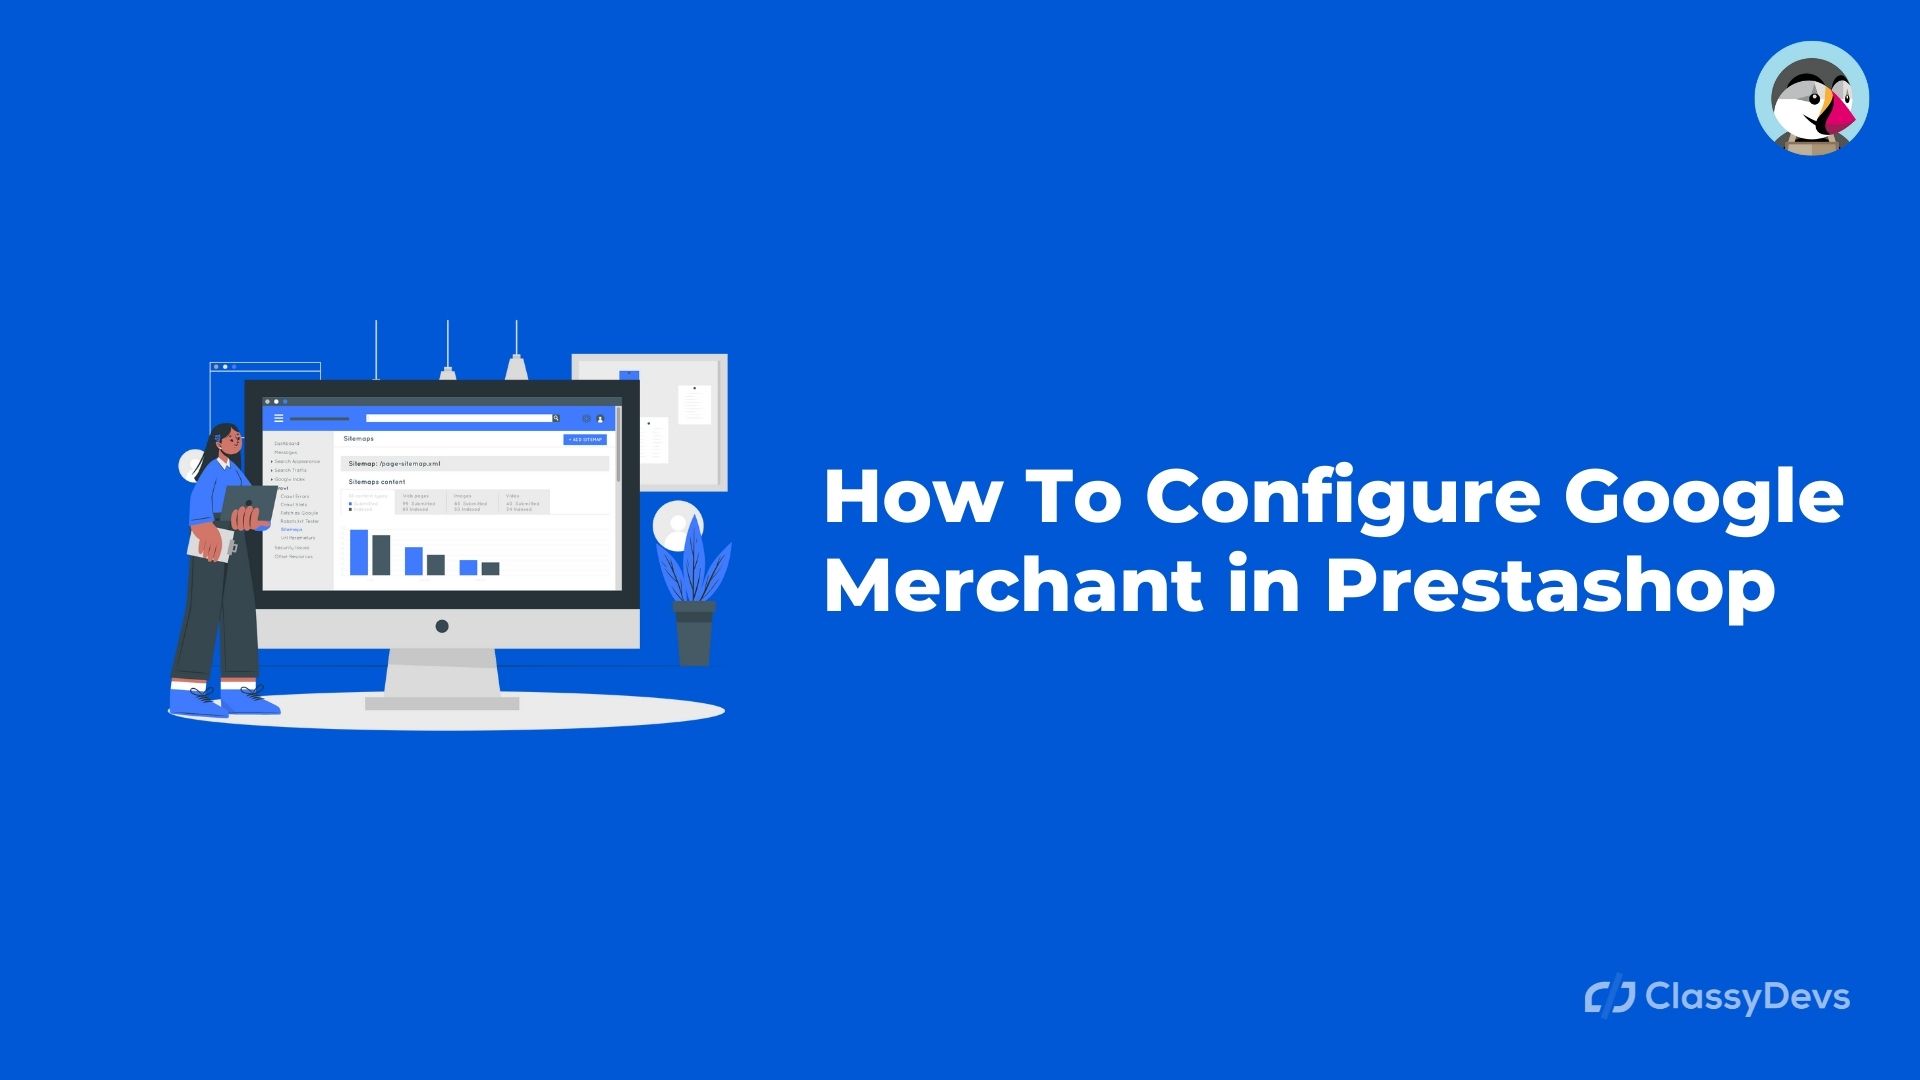 How To Configure Google Merchant in Prestashop